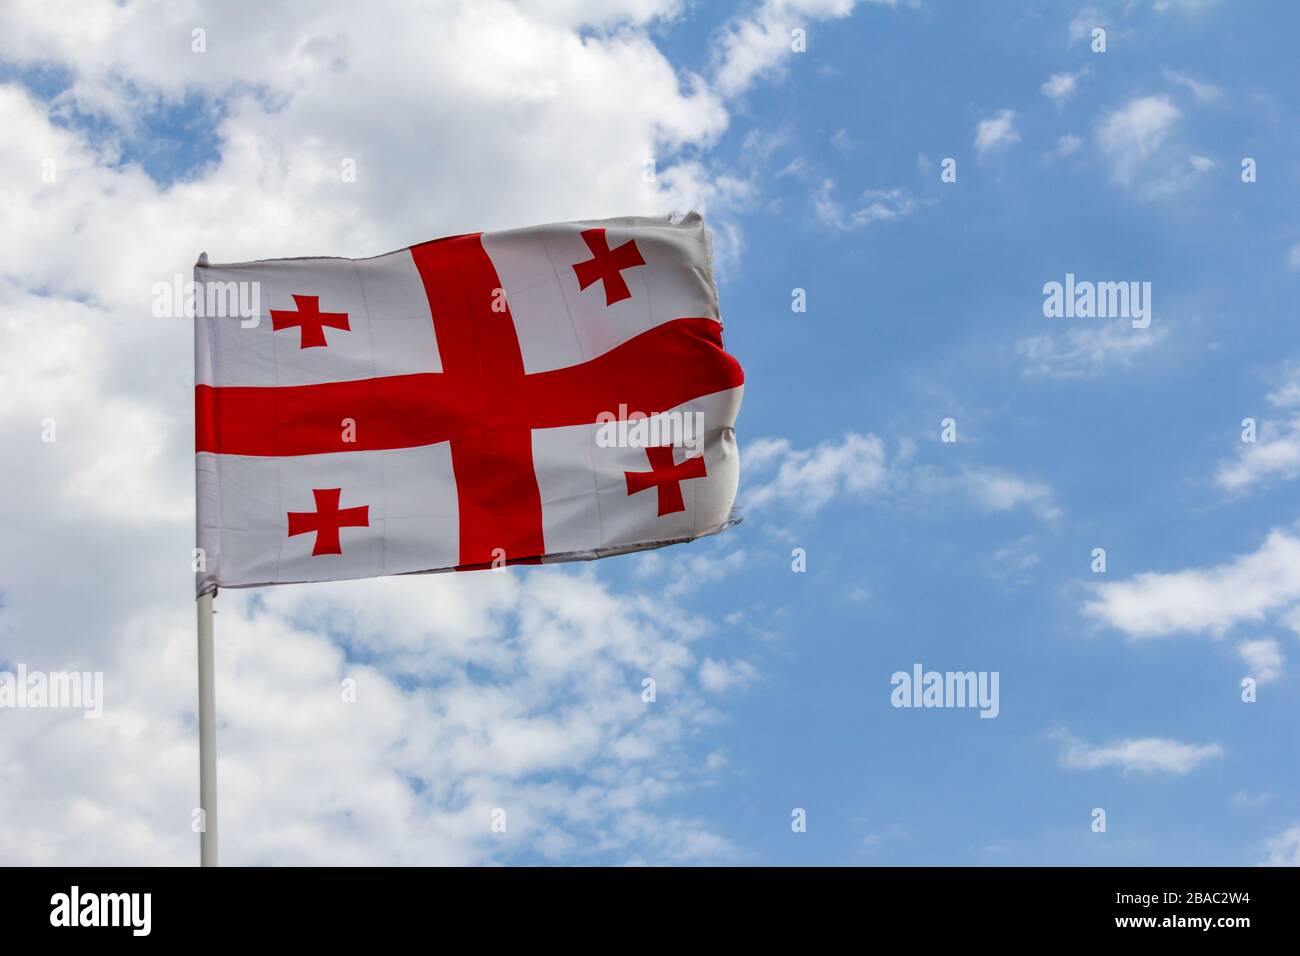 La bandera de la República de Georgia se asola en una fuerte brisa contra un cielo azul con nubes blancas Foto de stock